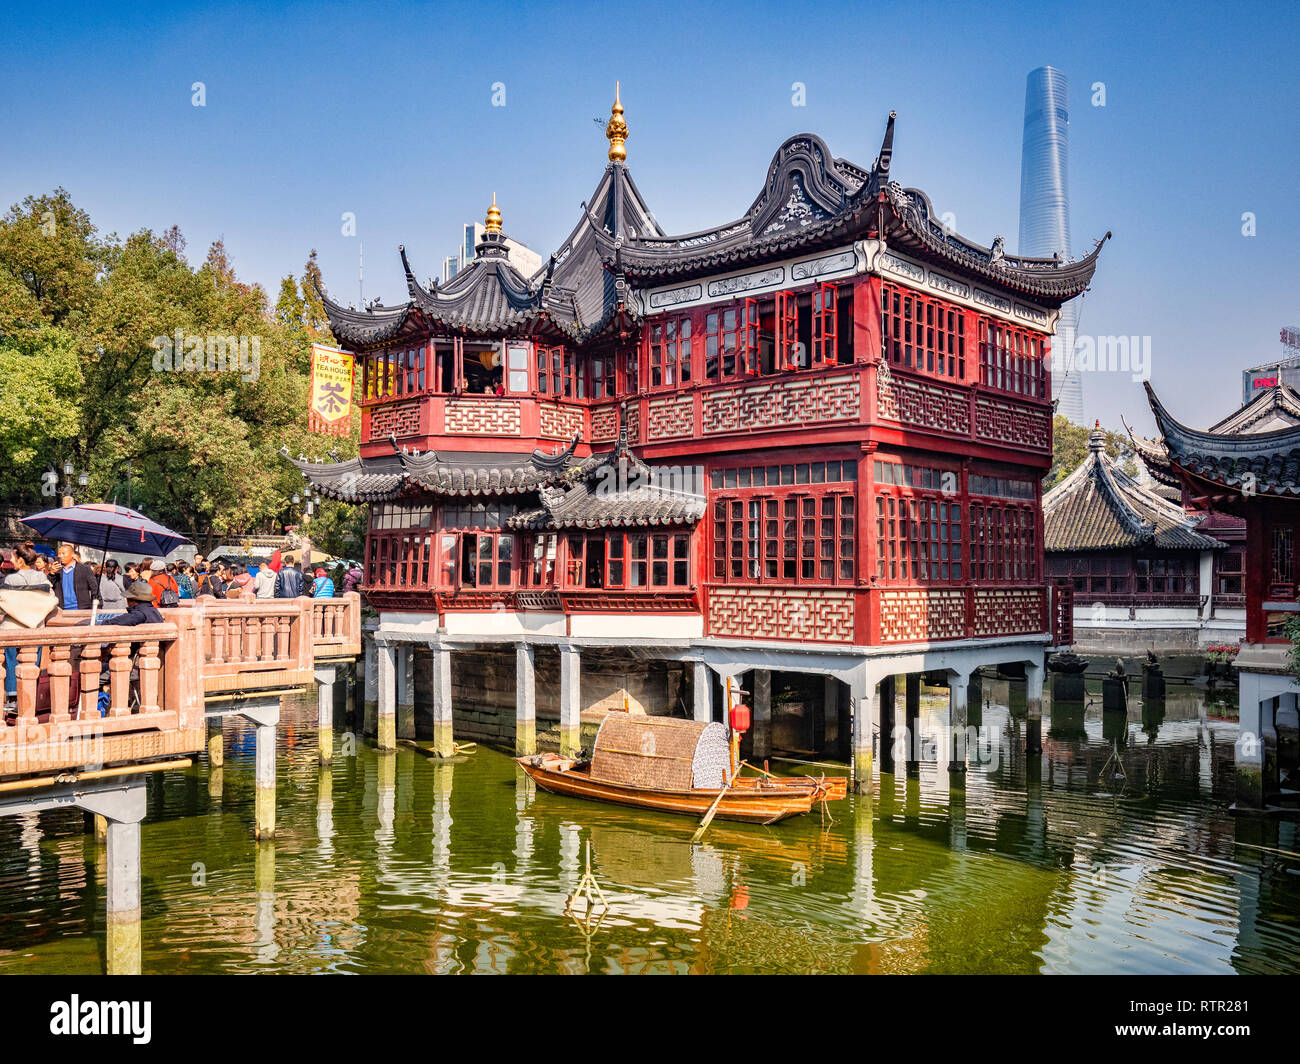 29 novembre 2018 - Shanghai, Chine - La Maison de Thé Huxinting et neuf tour pont dans le jardin Yu de la vieille ville, Shanghai Banque D'Images